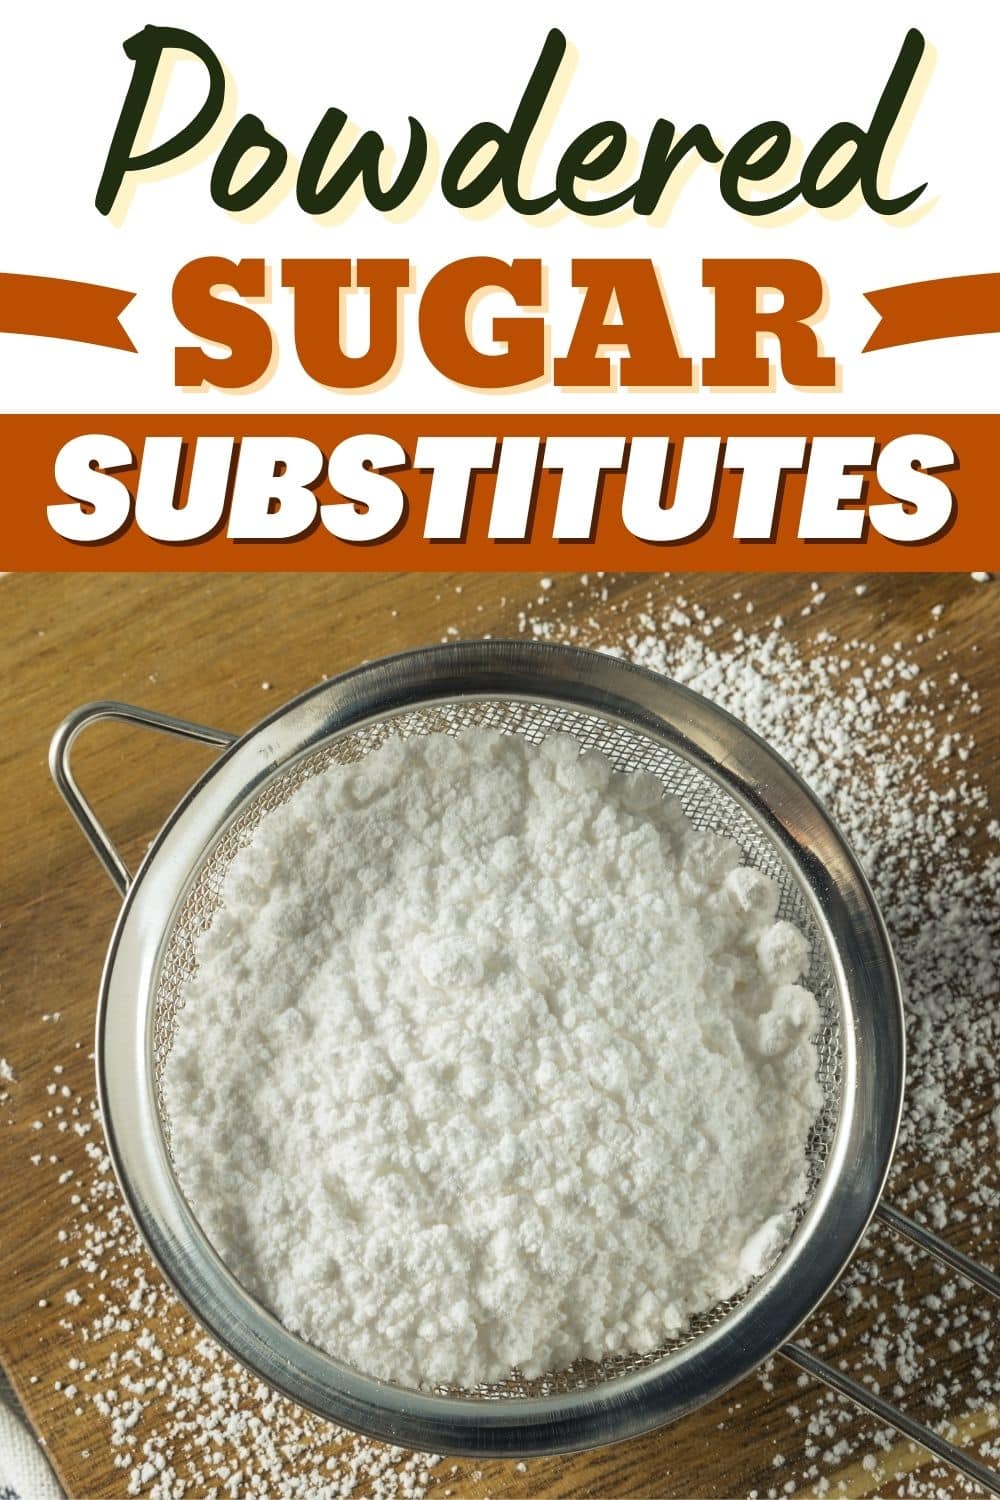 Powdered Sugar Substitutes 2 